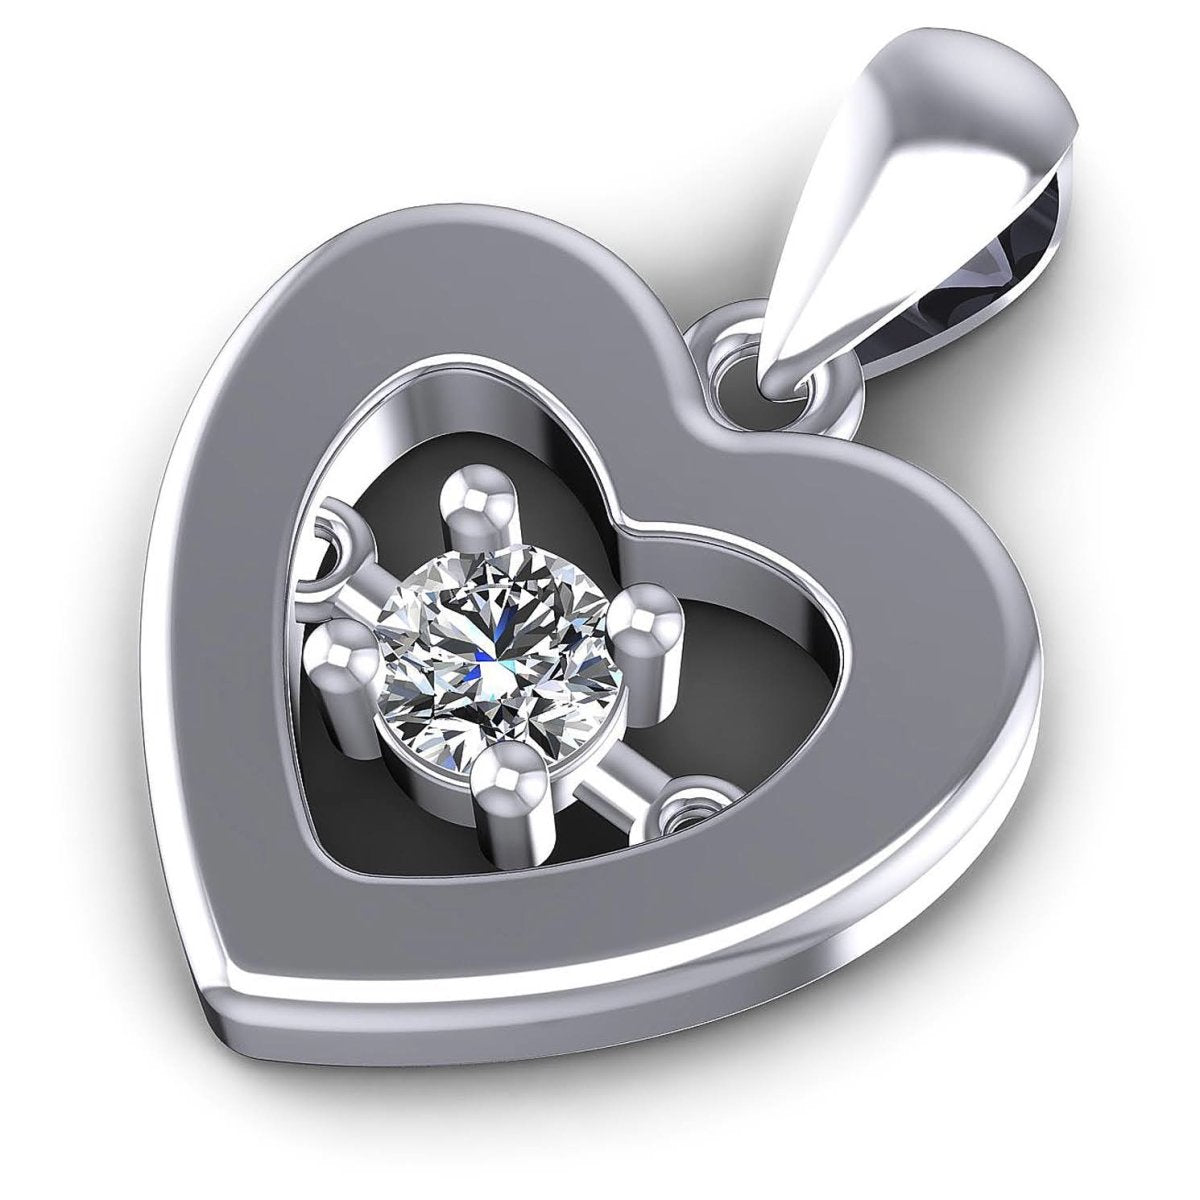 0.10 CT Round Cut Diamonds - Heart Pendant in Silver - Primestyle.com